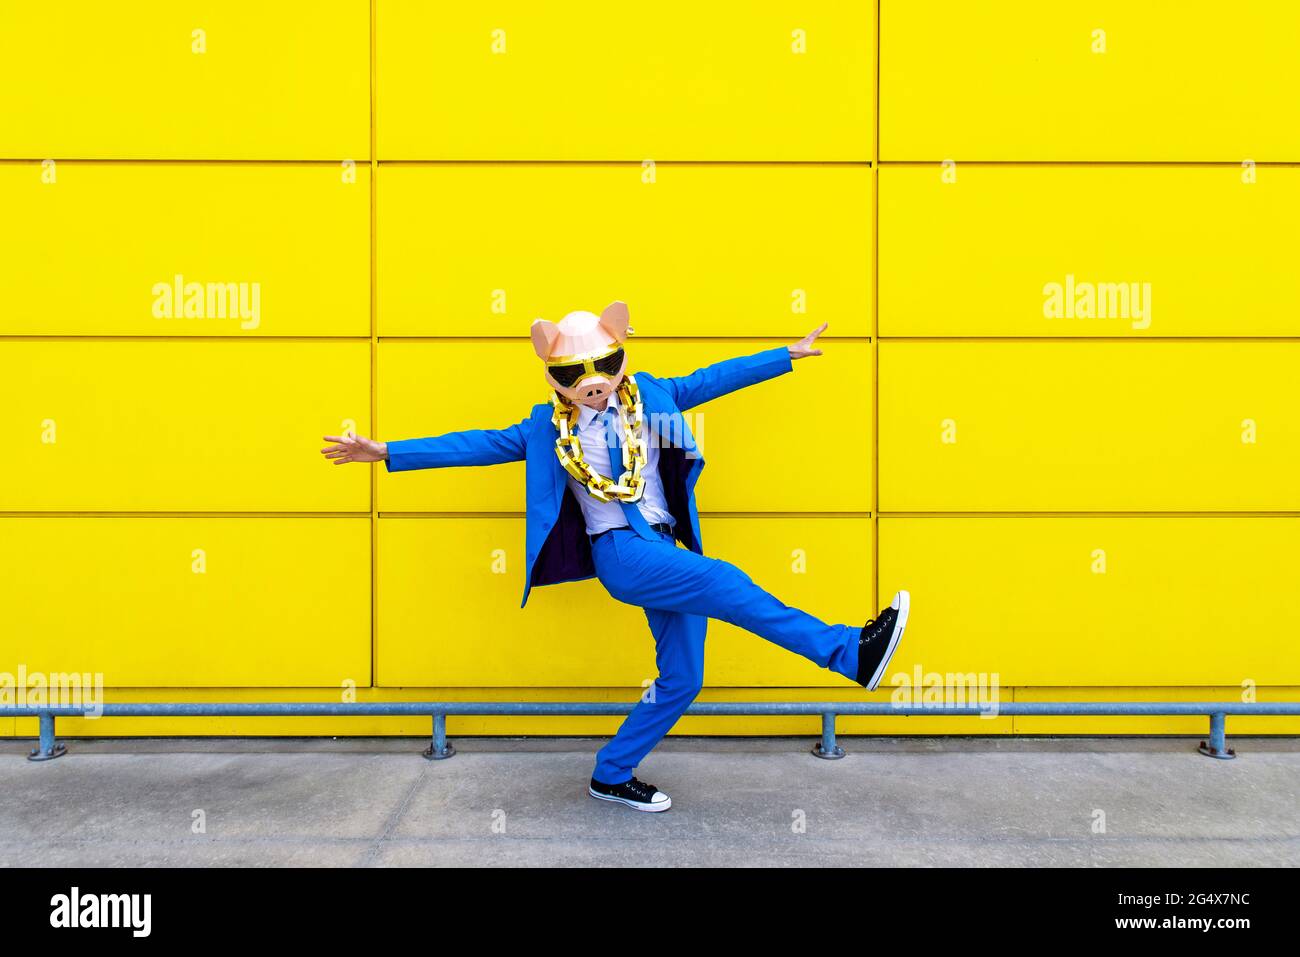 Homme portant un costume bleu vif, un masque de porc et une grande chaîne dorée debout sur une jambe devant le mur jaune Banque D'Images